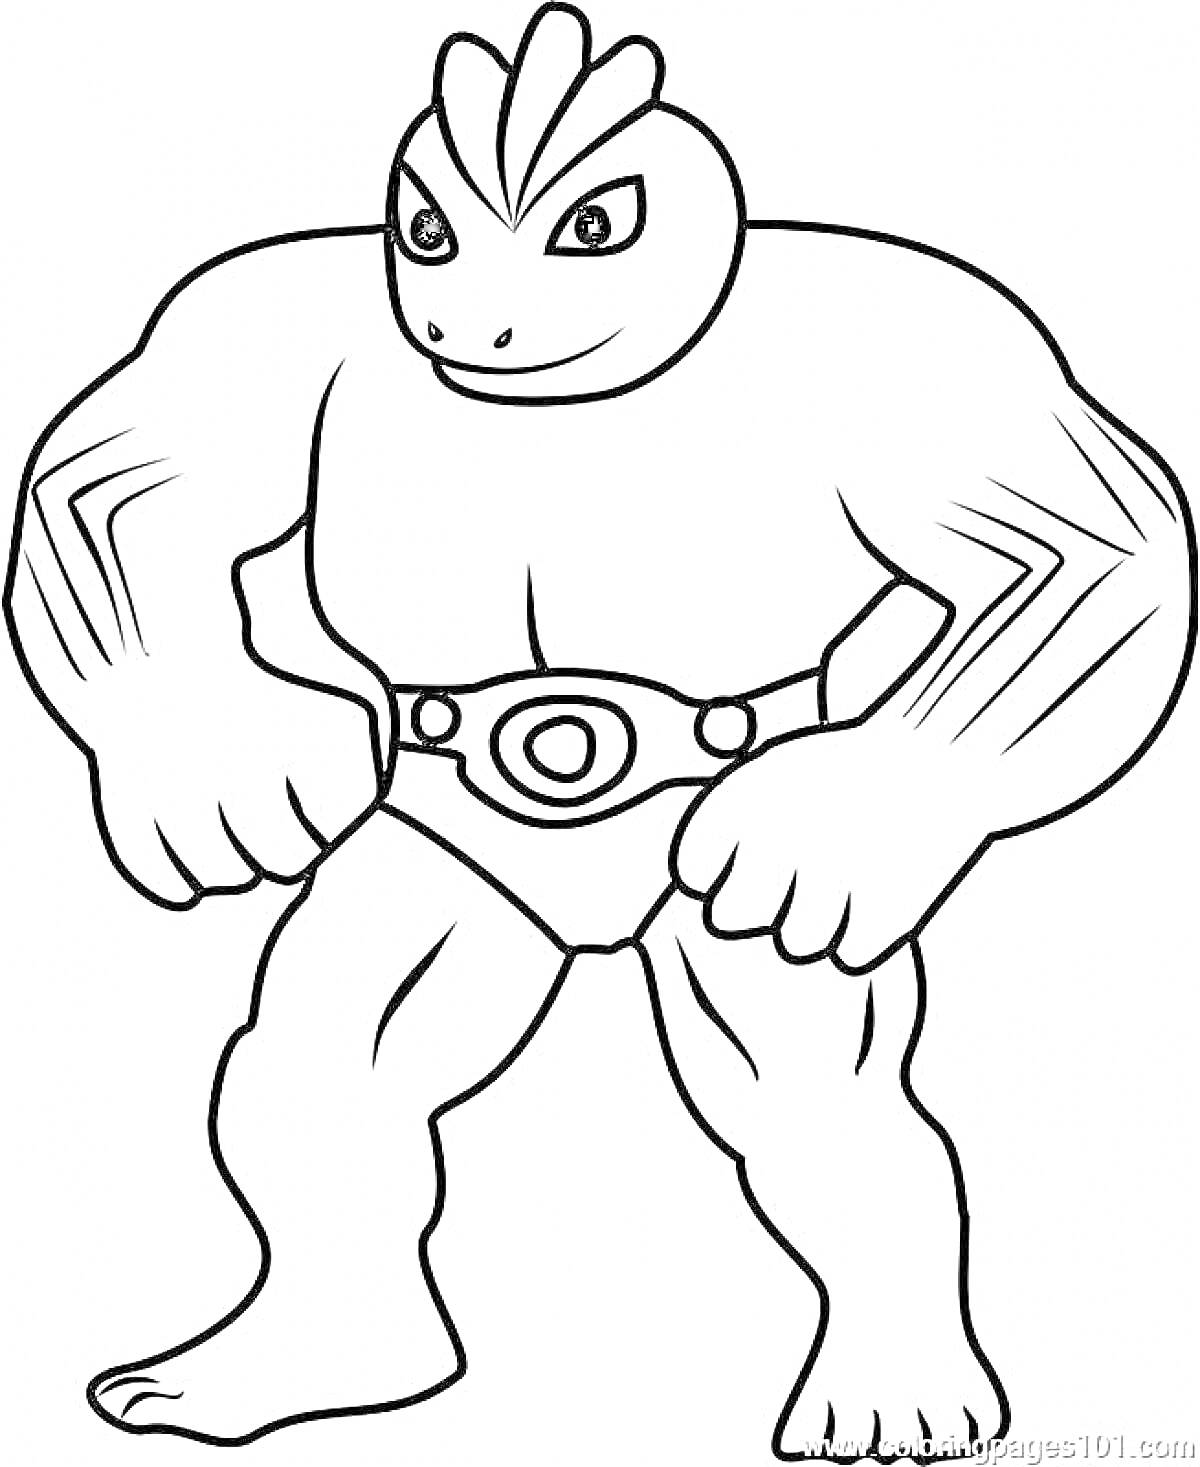 Супергерой Гуджицу с мускулистыми руками и ногами в трусах с поясом